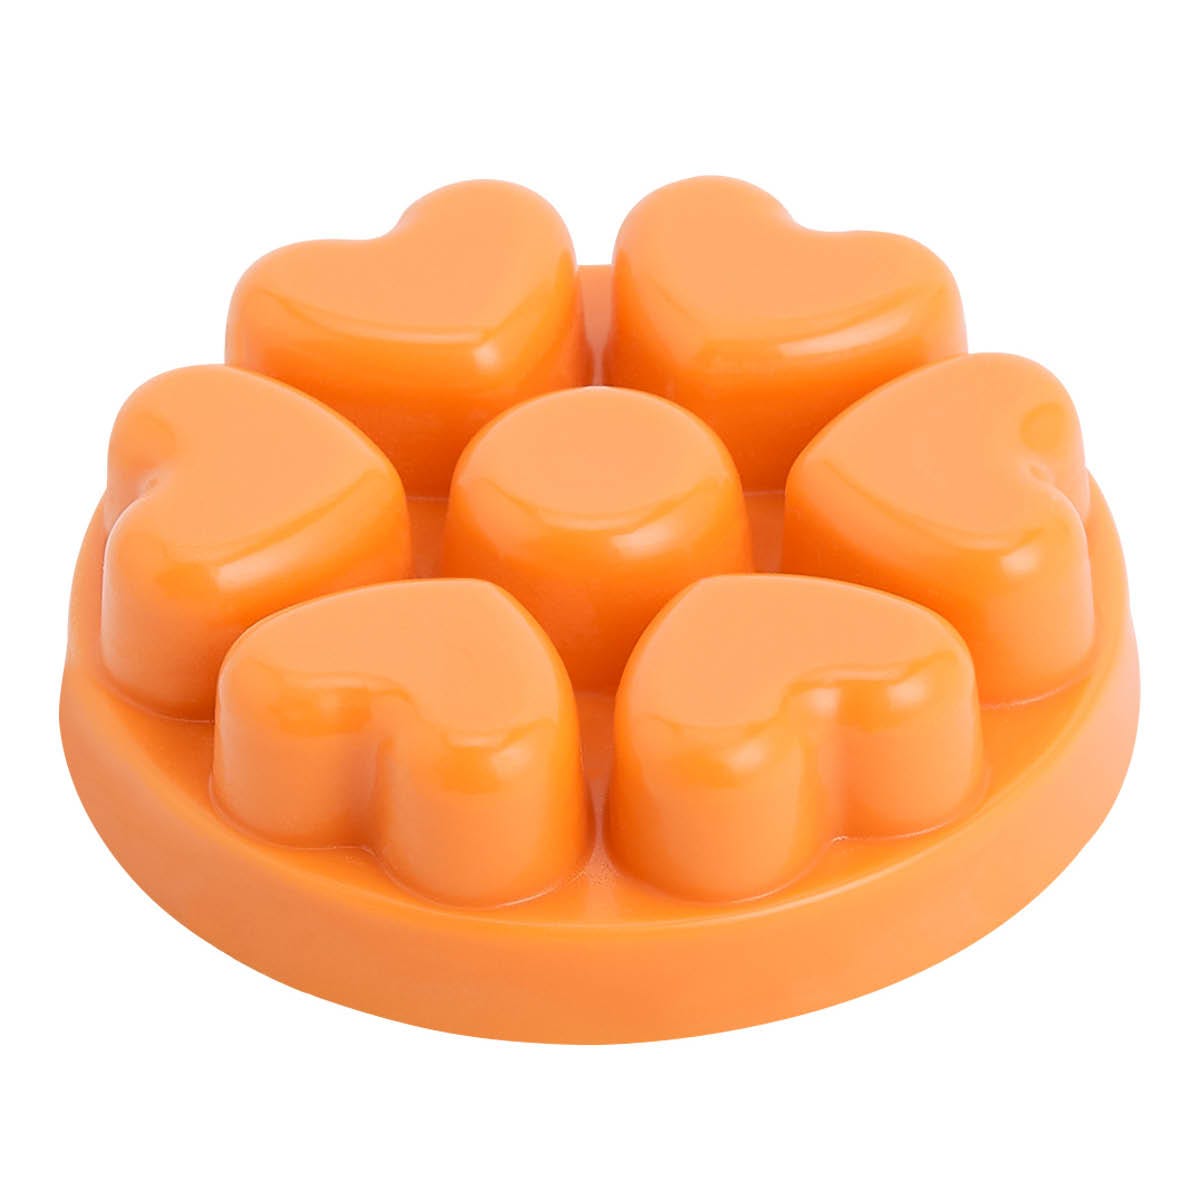 Apricot Peach Preserve Scent Plus® Heart Melts - PartyLite US